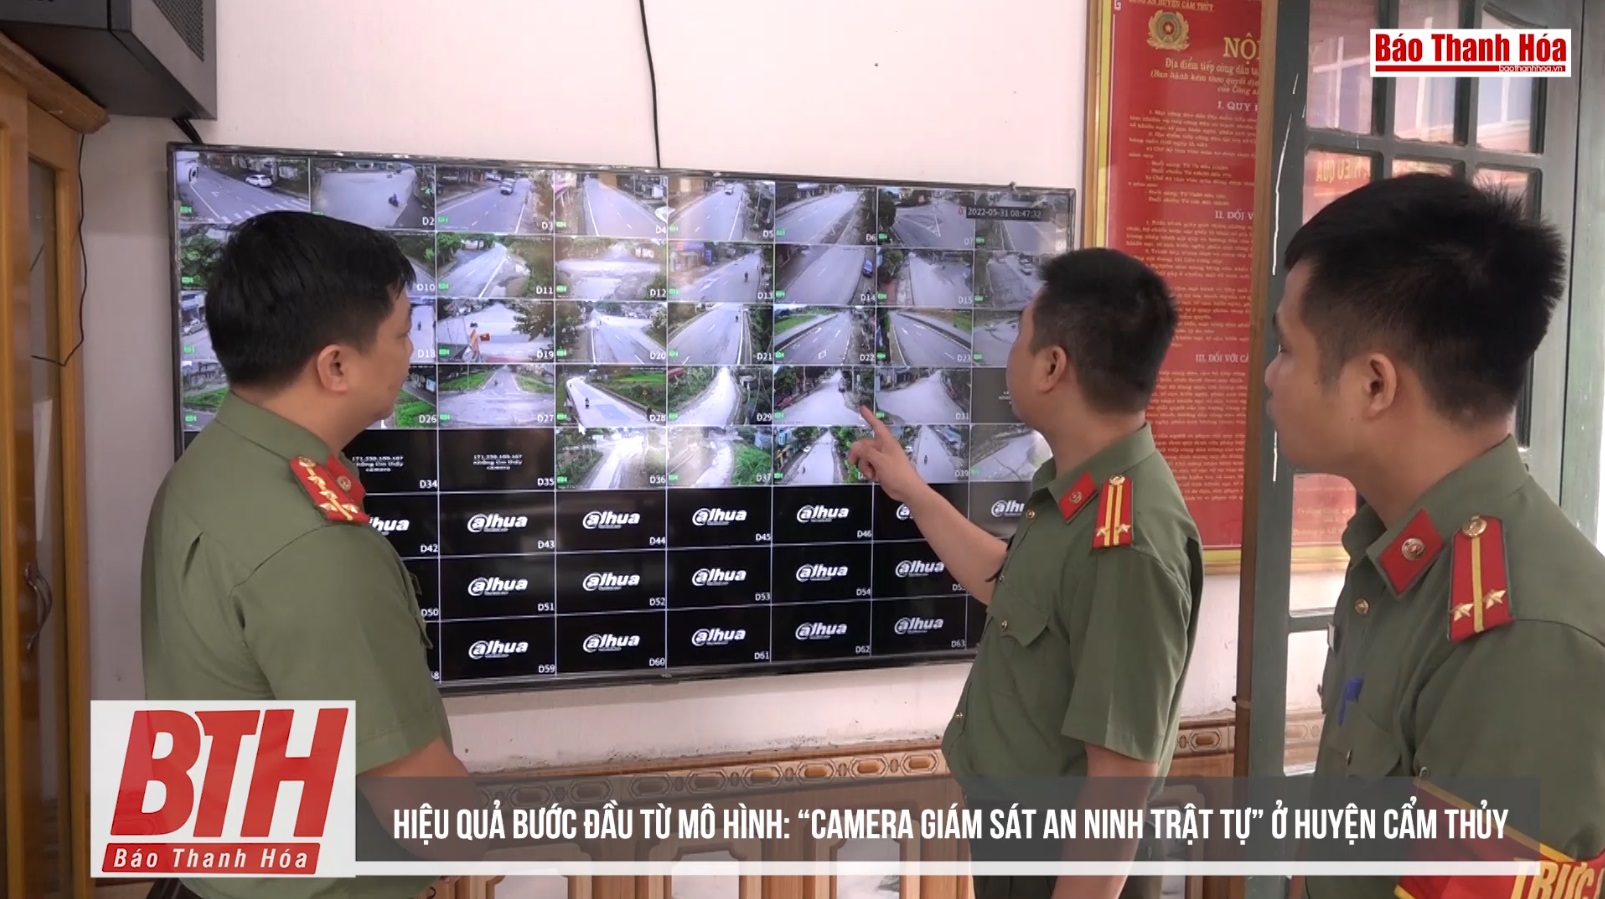 Hiệu quả bước đầu từ mô hình “Camera giám sát an ninh trật tự” ở huyện Cẩm Thủy